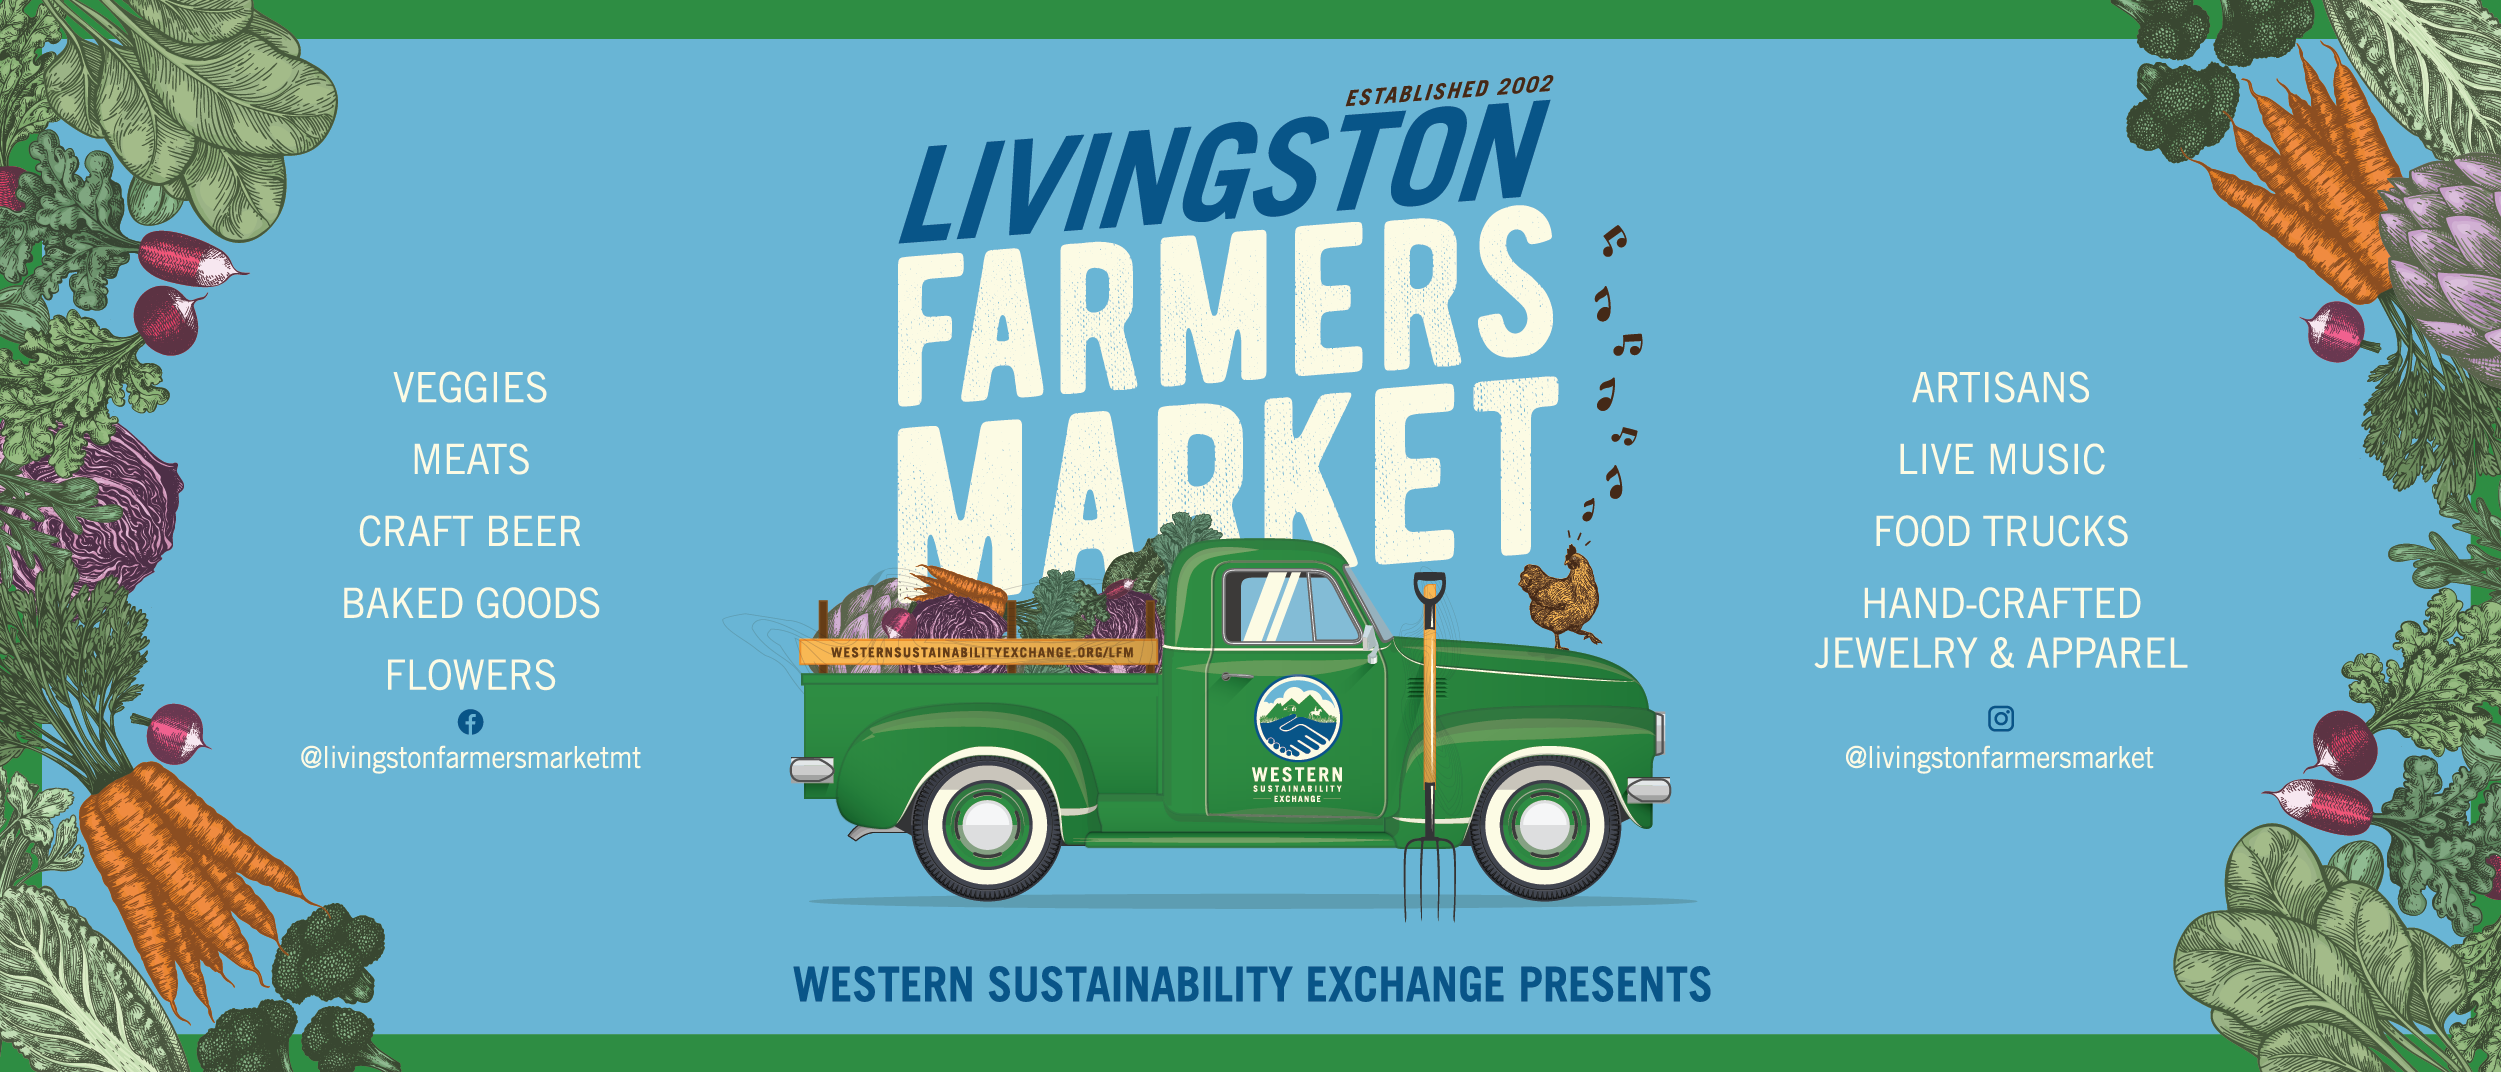 Livingston Farmers Market, Wednesdays at Miles Band Shell Park in Livingston, MT